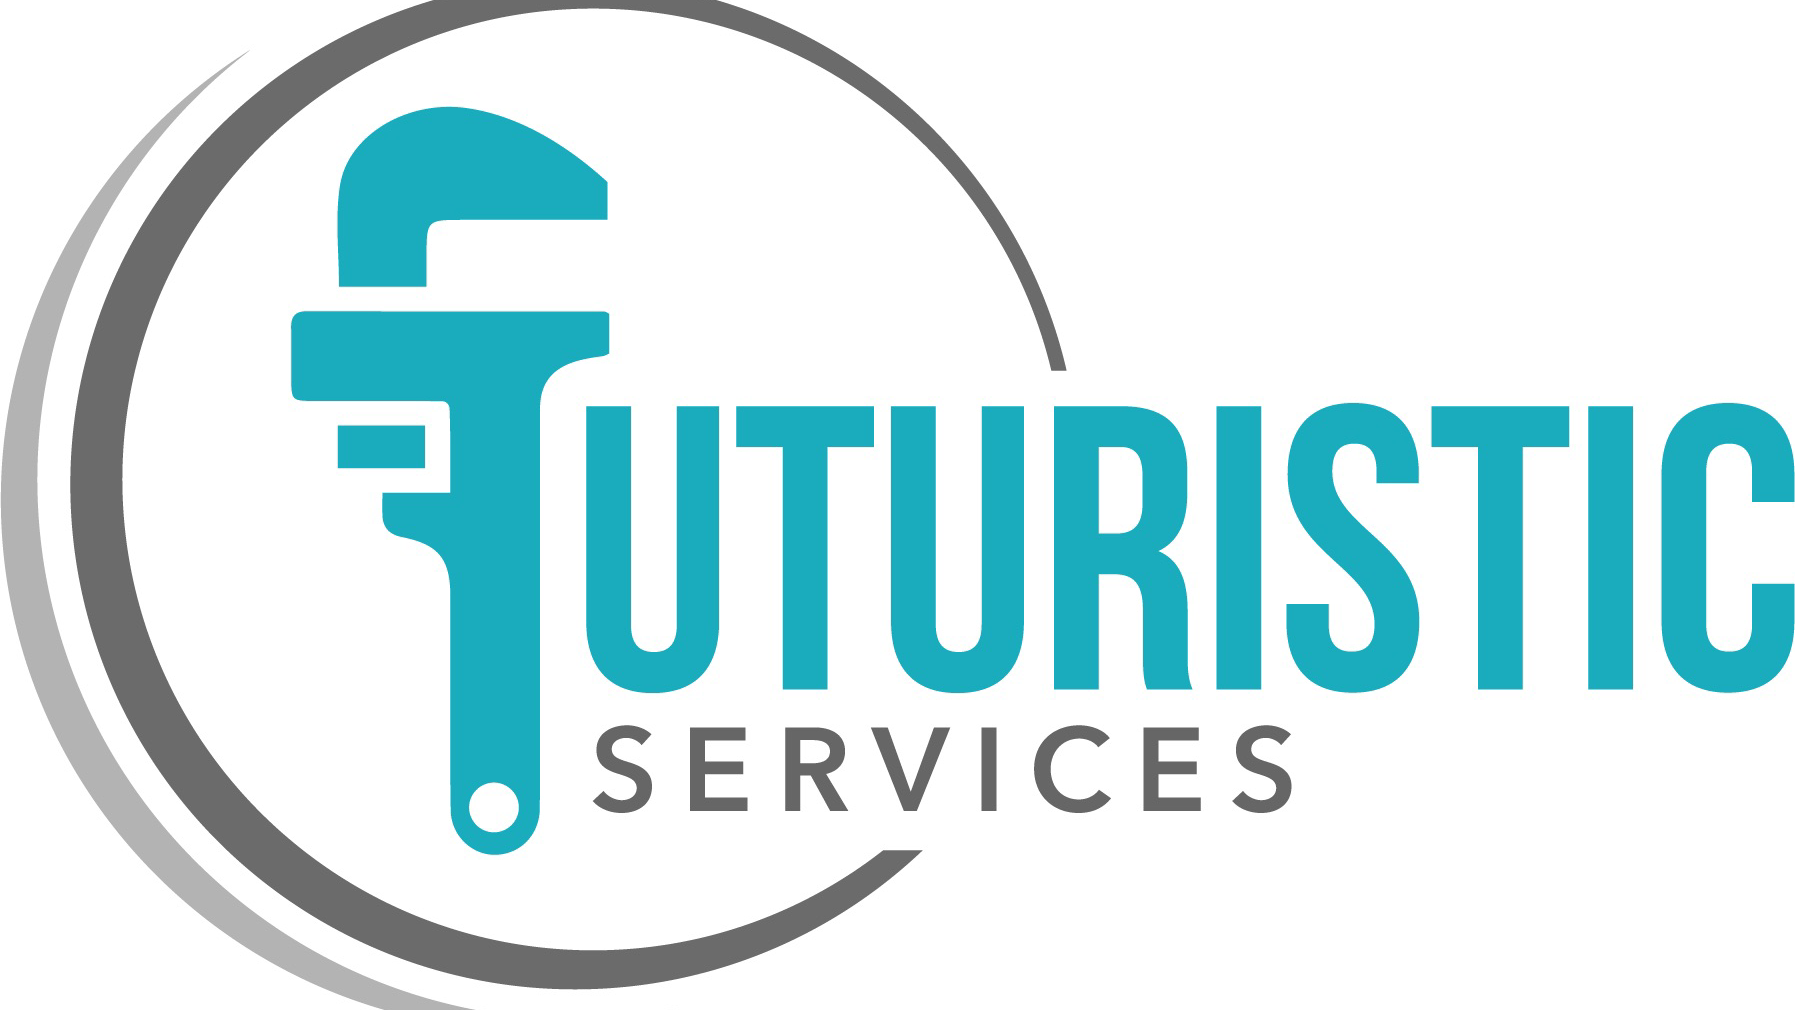 FUTURISTIC SERVICES